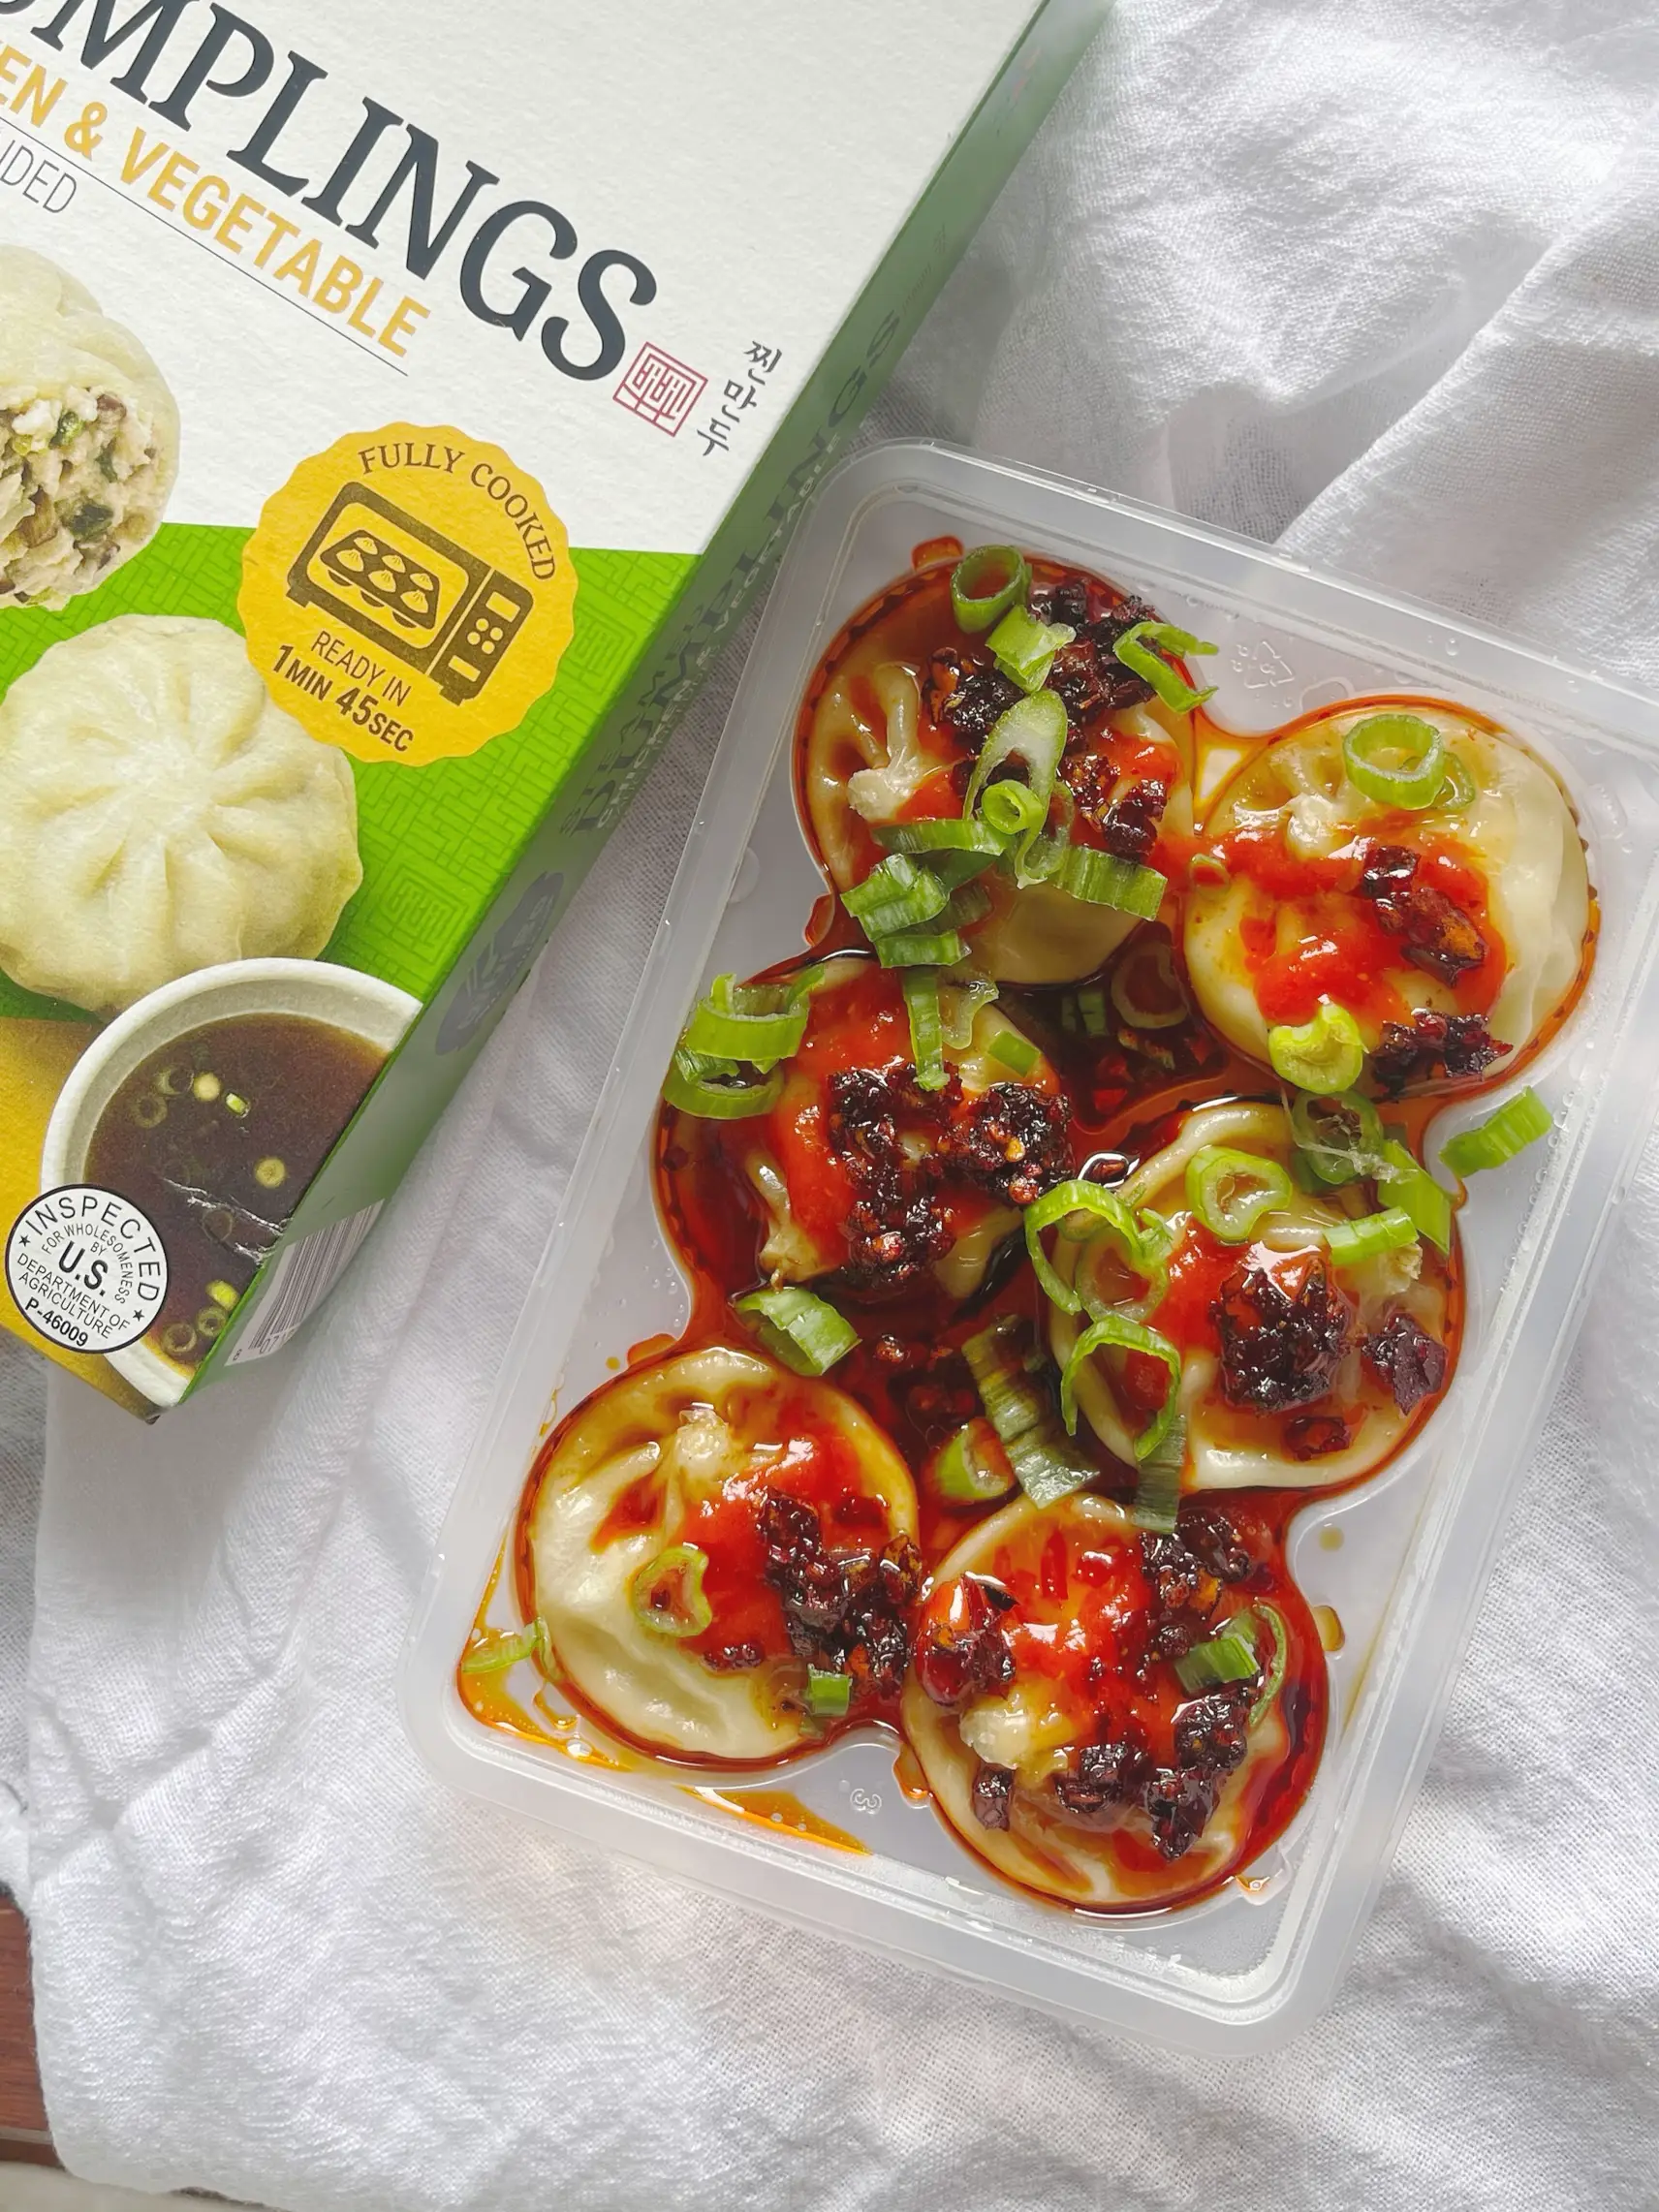 Bibigo Beef Pho Steamed Soup Dumplings, 6.6 oz - Pay Less Super Markets